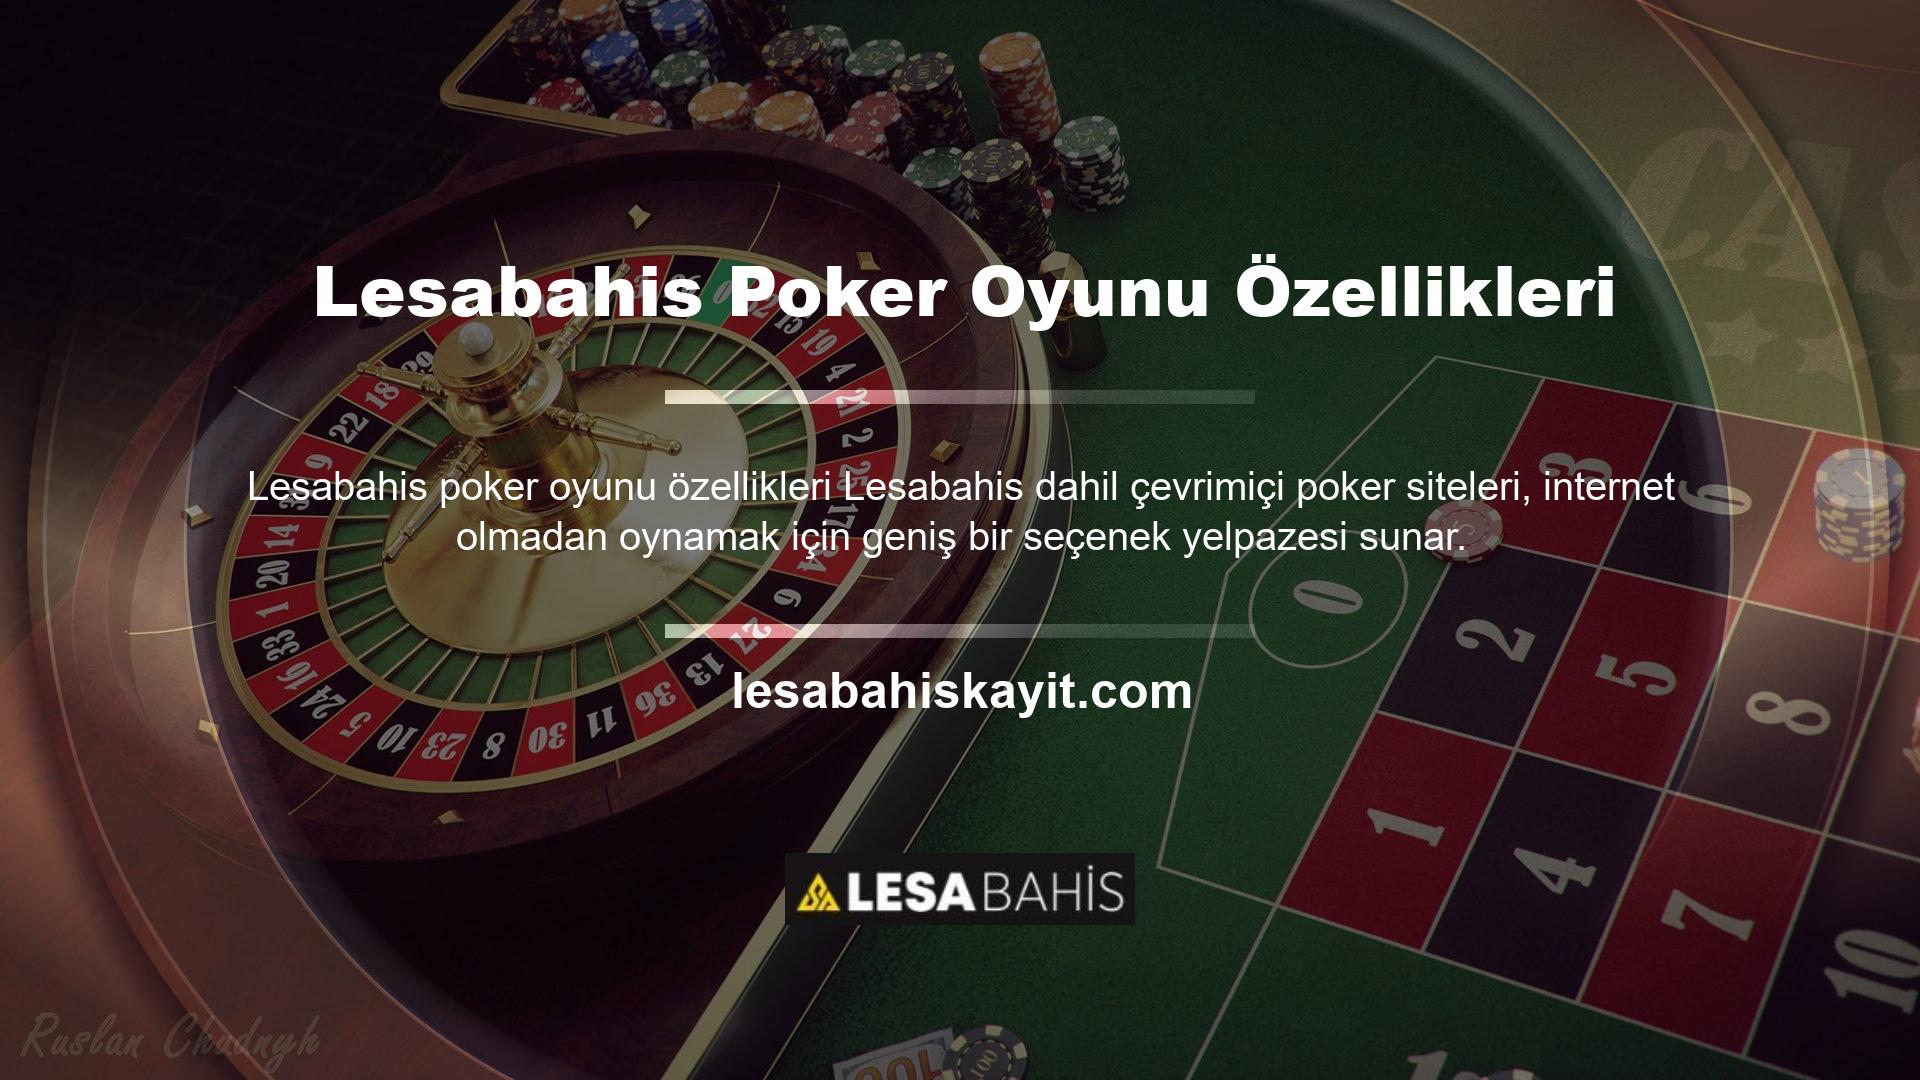 Oyunu internet bağlantısı olmadan bilgisayarınızda oynamak istiyorsanız Lesabahis Casino bölümünü ziyaret ederek bunu yapabilirsiniz